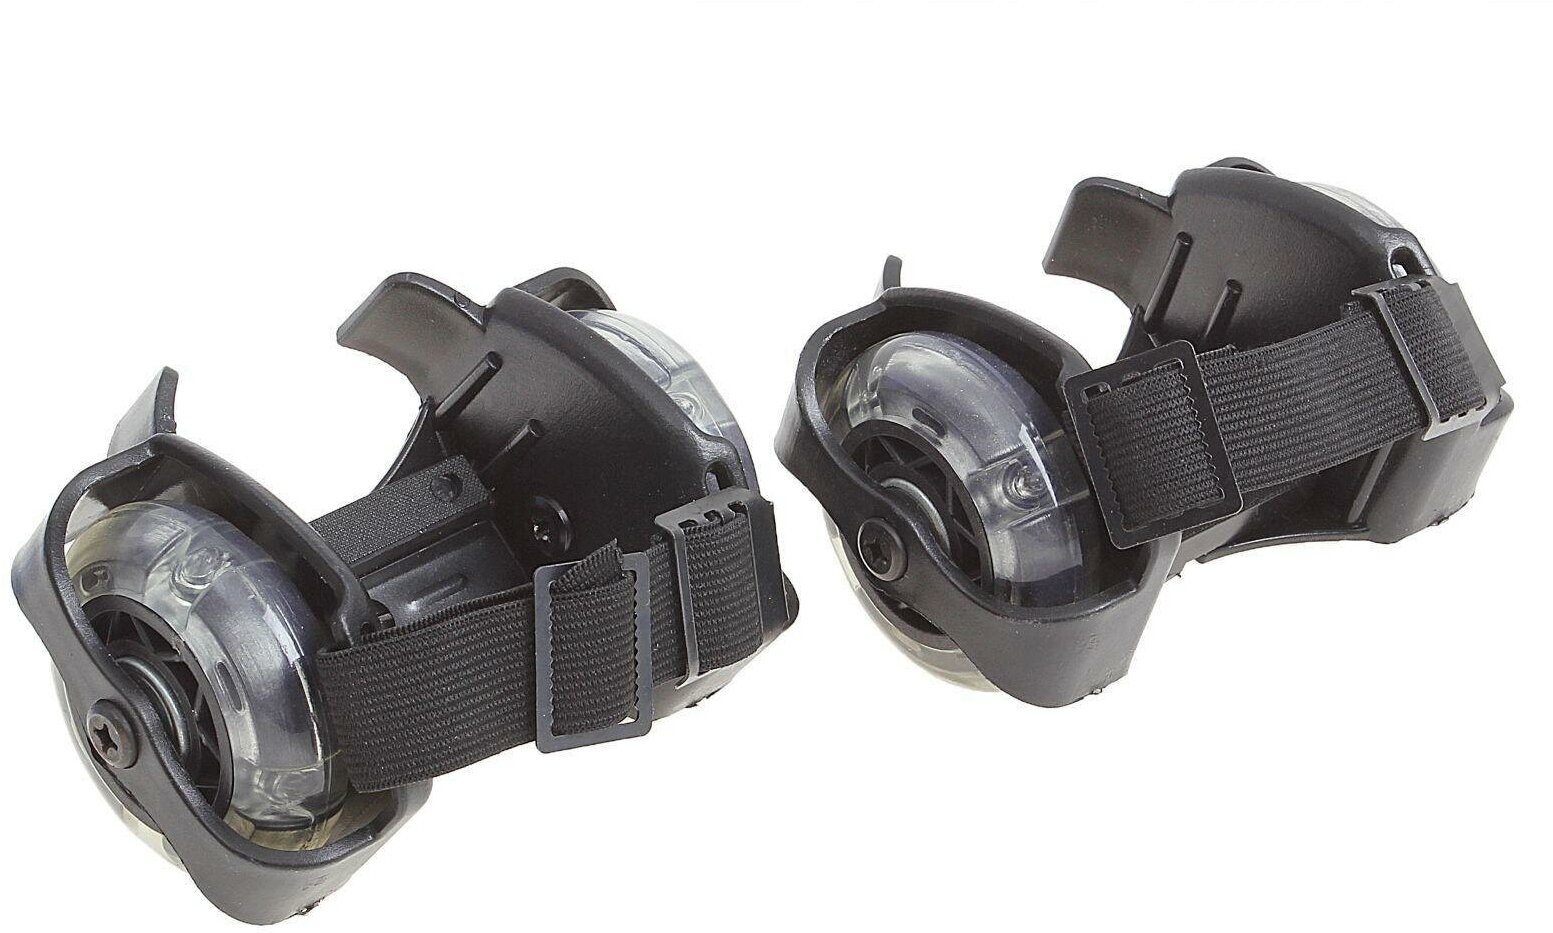 Ролики для обуви раздвижные, светящиеся колёса РVC 70 мм, ширина 6-10 см, до 70 кг, цвет чёрный